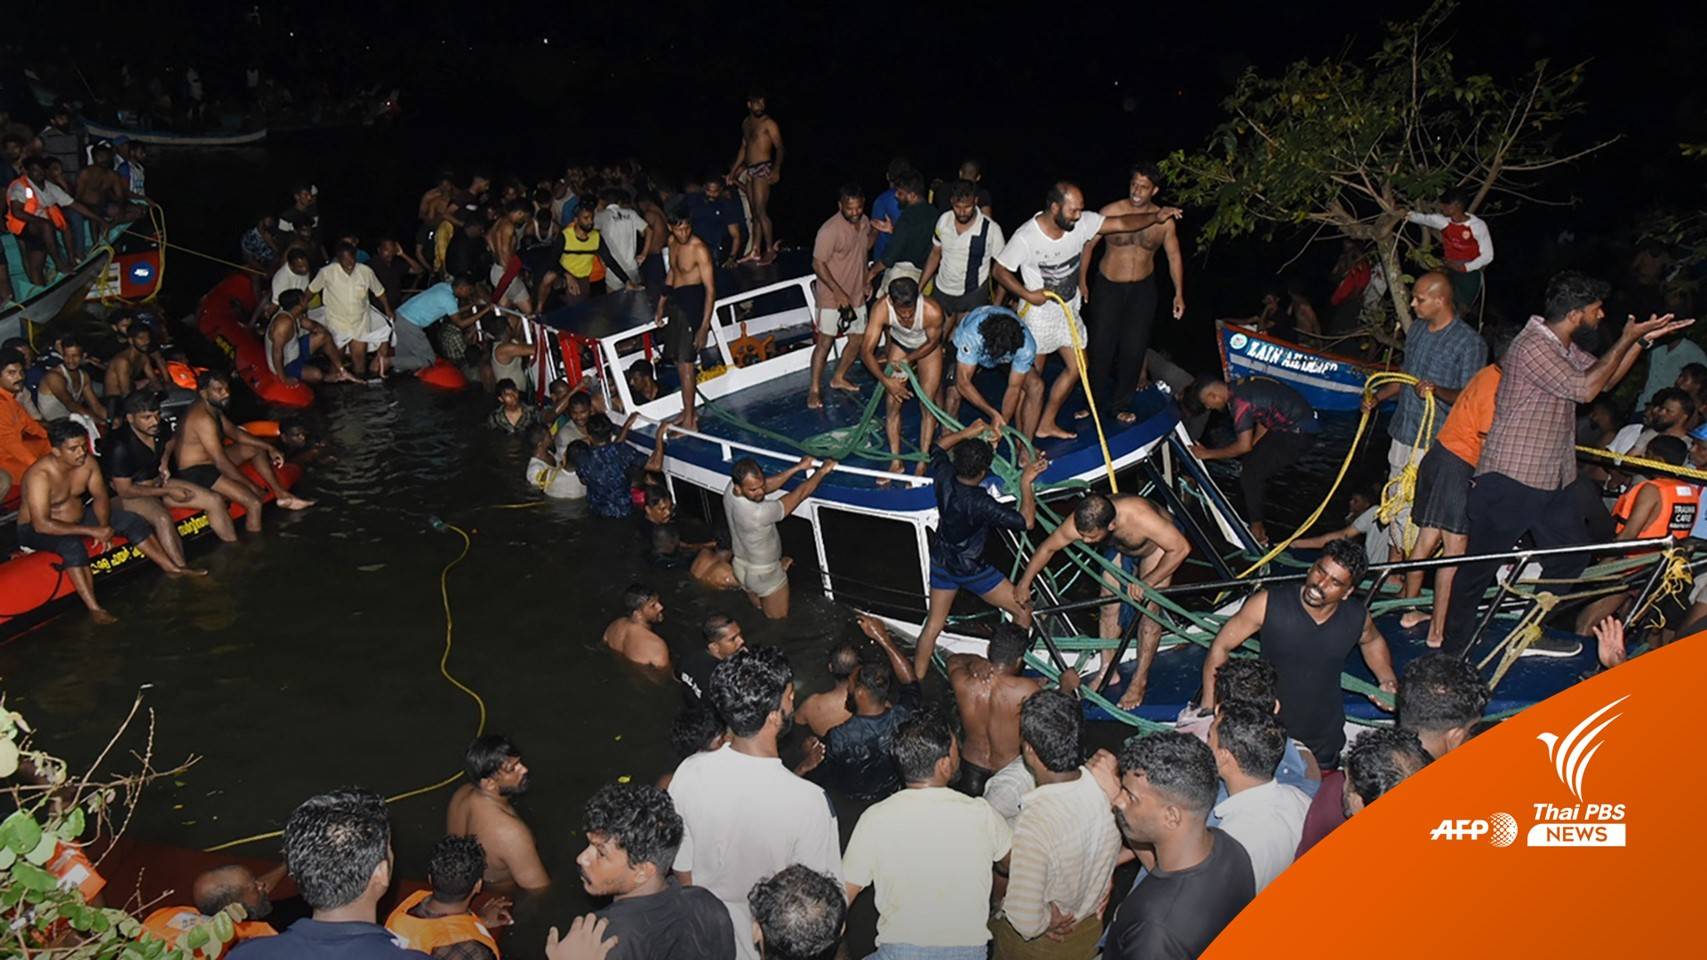 เรือท่องเที่ยวล่มใน "อินเดีย" ตายอย่างน้อย 22 คน